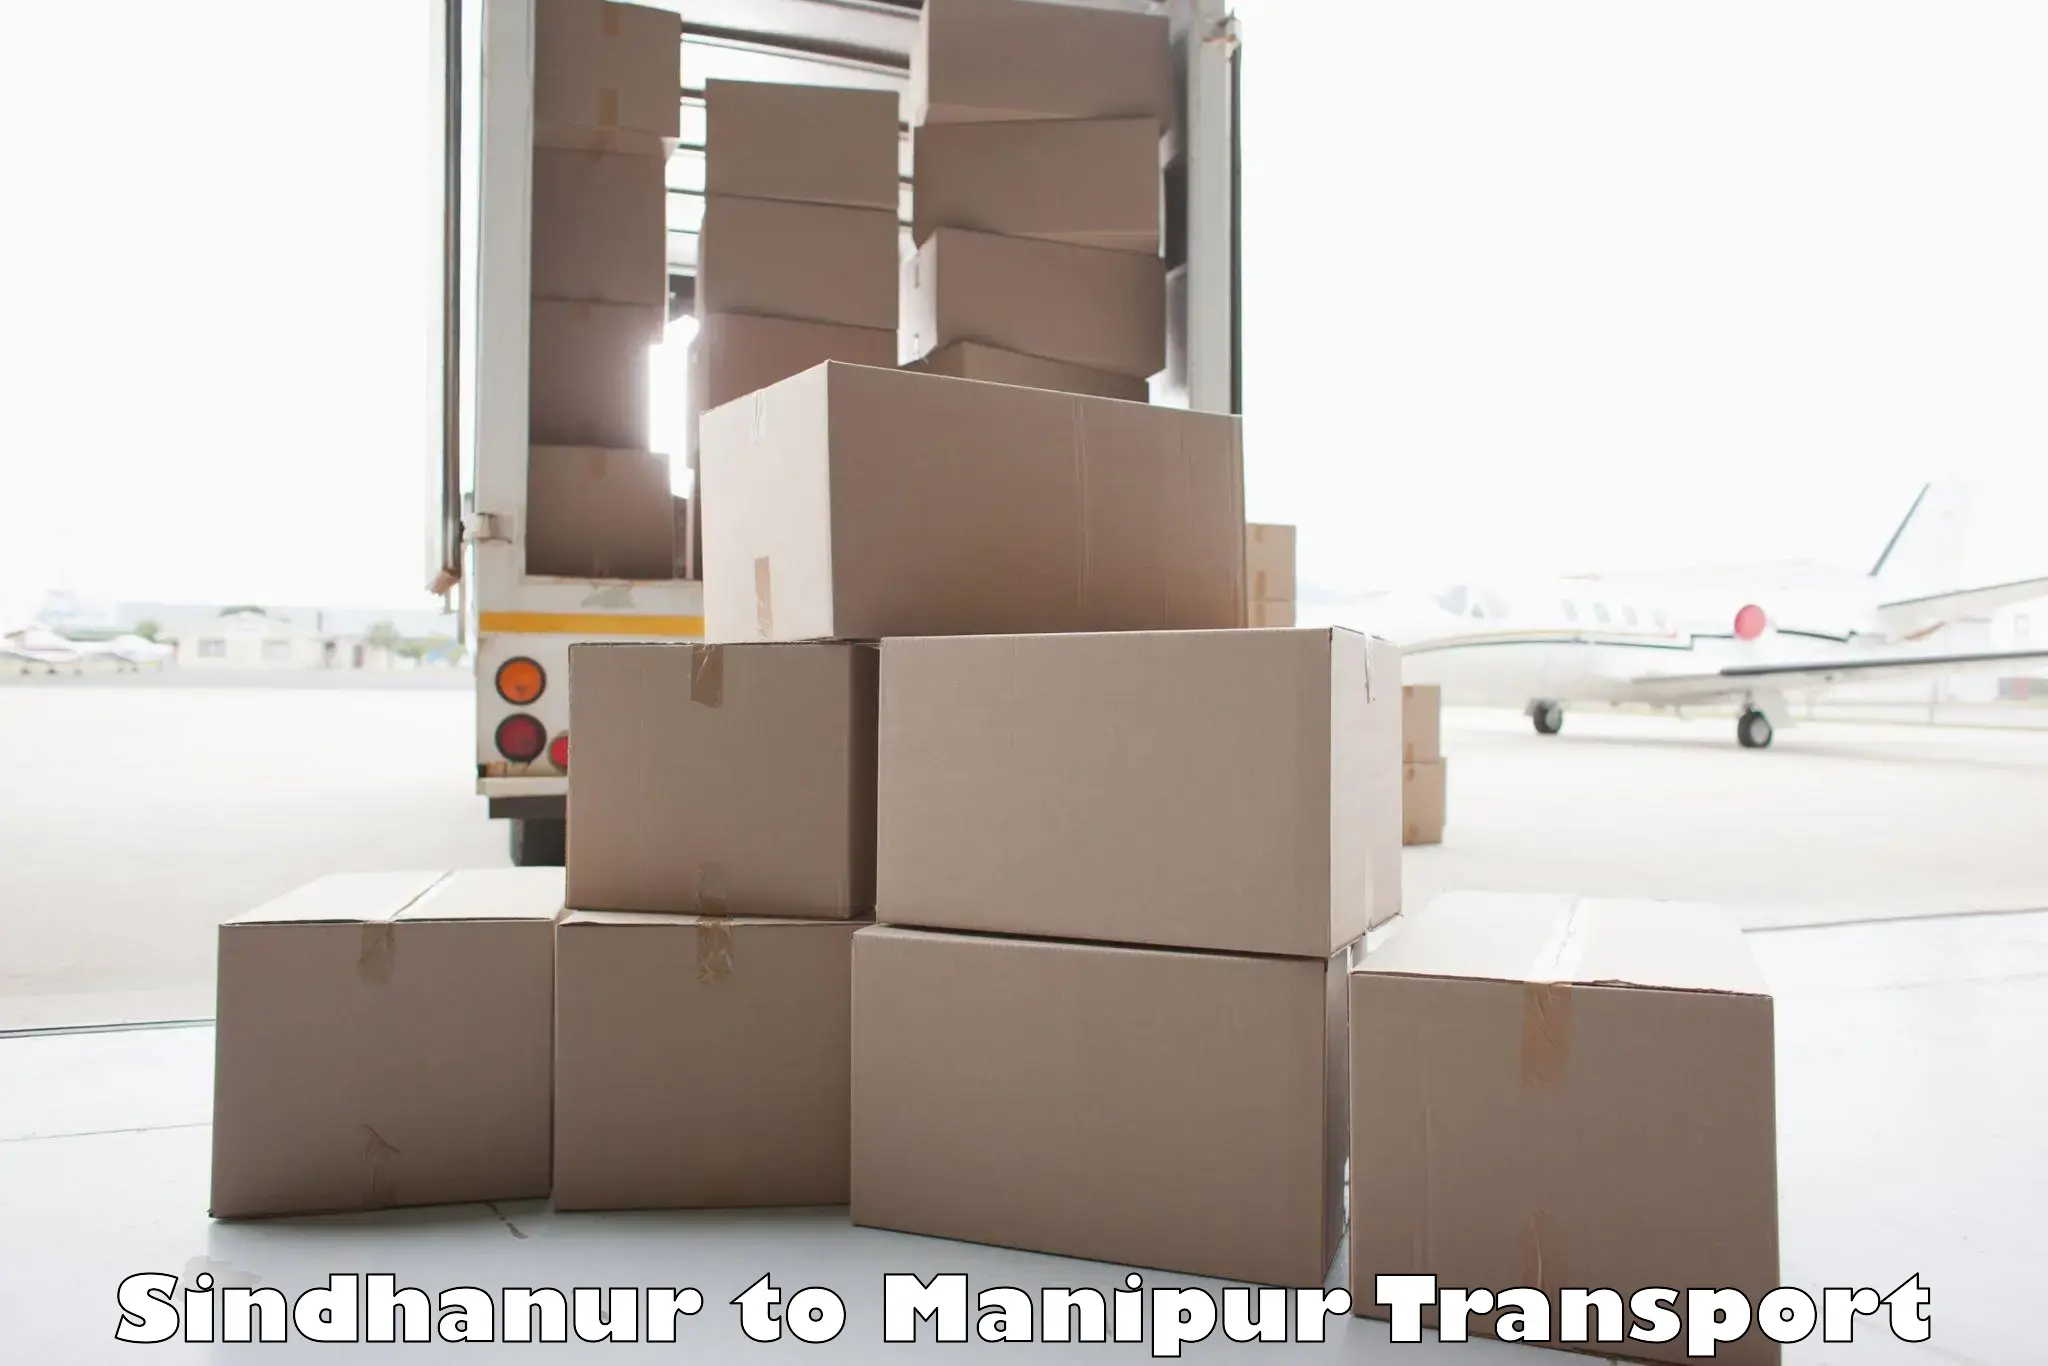 Online transport service Sindhanur to Churachandpur